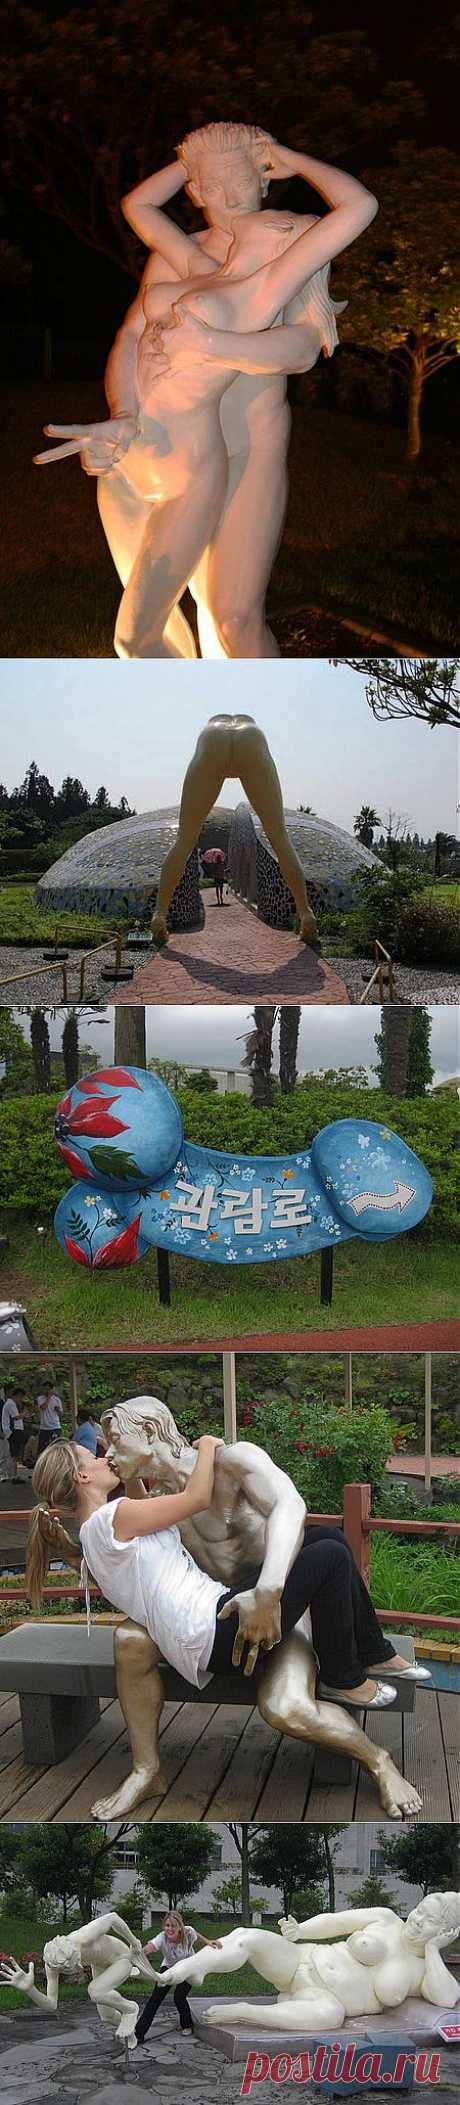 Парк Любви на острове Чеджудо – Камасутра по-корейски Вот от корейцев почему-то этого не ожидала))) Не знаю, почему, но удивилась, когда узнала, что этот парк находится не в Тайланде, к примеру, или в Индии. Называется парк Jeju Loveland, и является он одной из главных достопримечательностей южнокорейского острова Чеджудо.